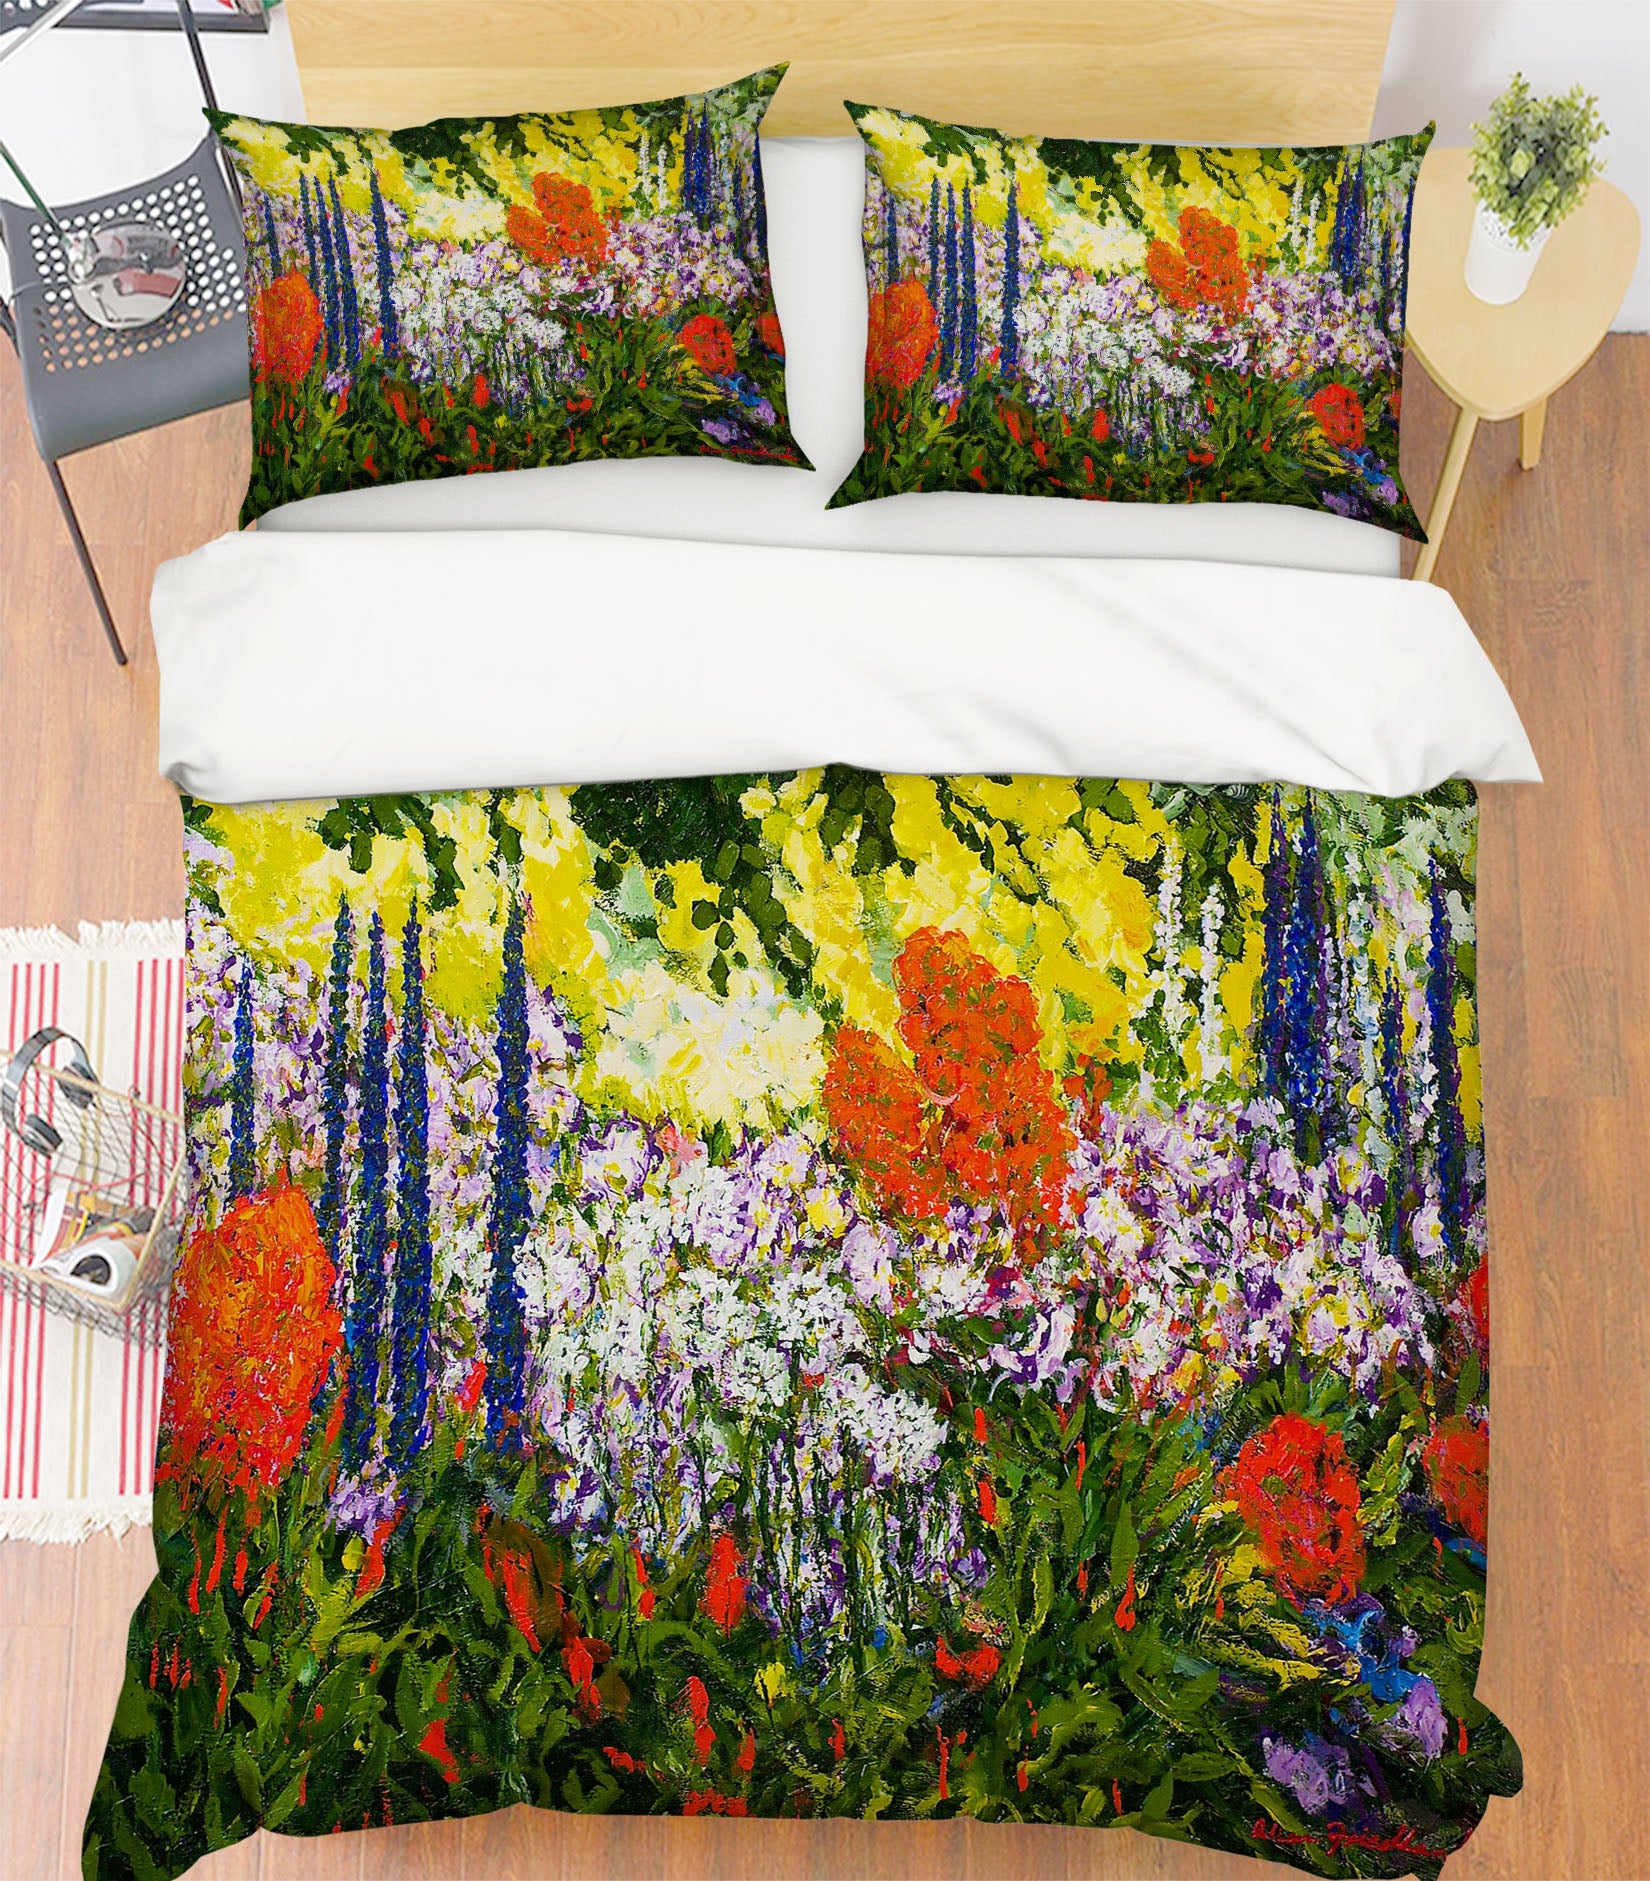 3D Lush Grass 1047 Allan P. Friedlander Bedding Bed Pillowcases Quilt